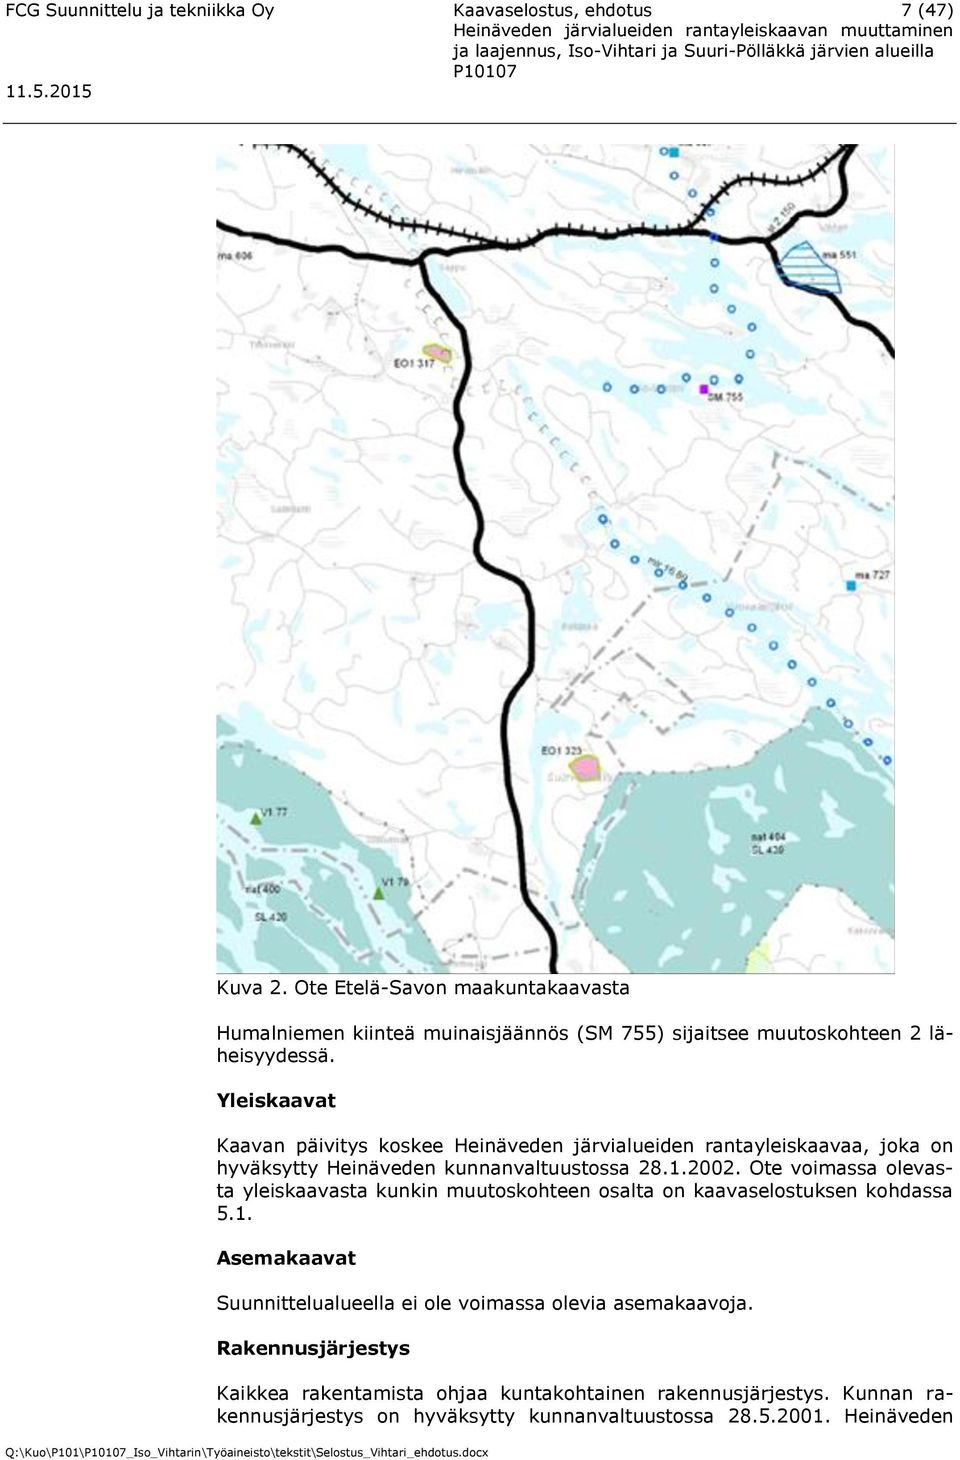 Yleiskaavat Kaavan päivitys koskee Heinäveden järvialueiden rantayleiskaavaa, joka on hyväksytty Heinäveden kunnanvaltuustossa 28.1.2002.